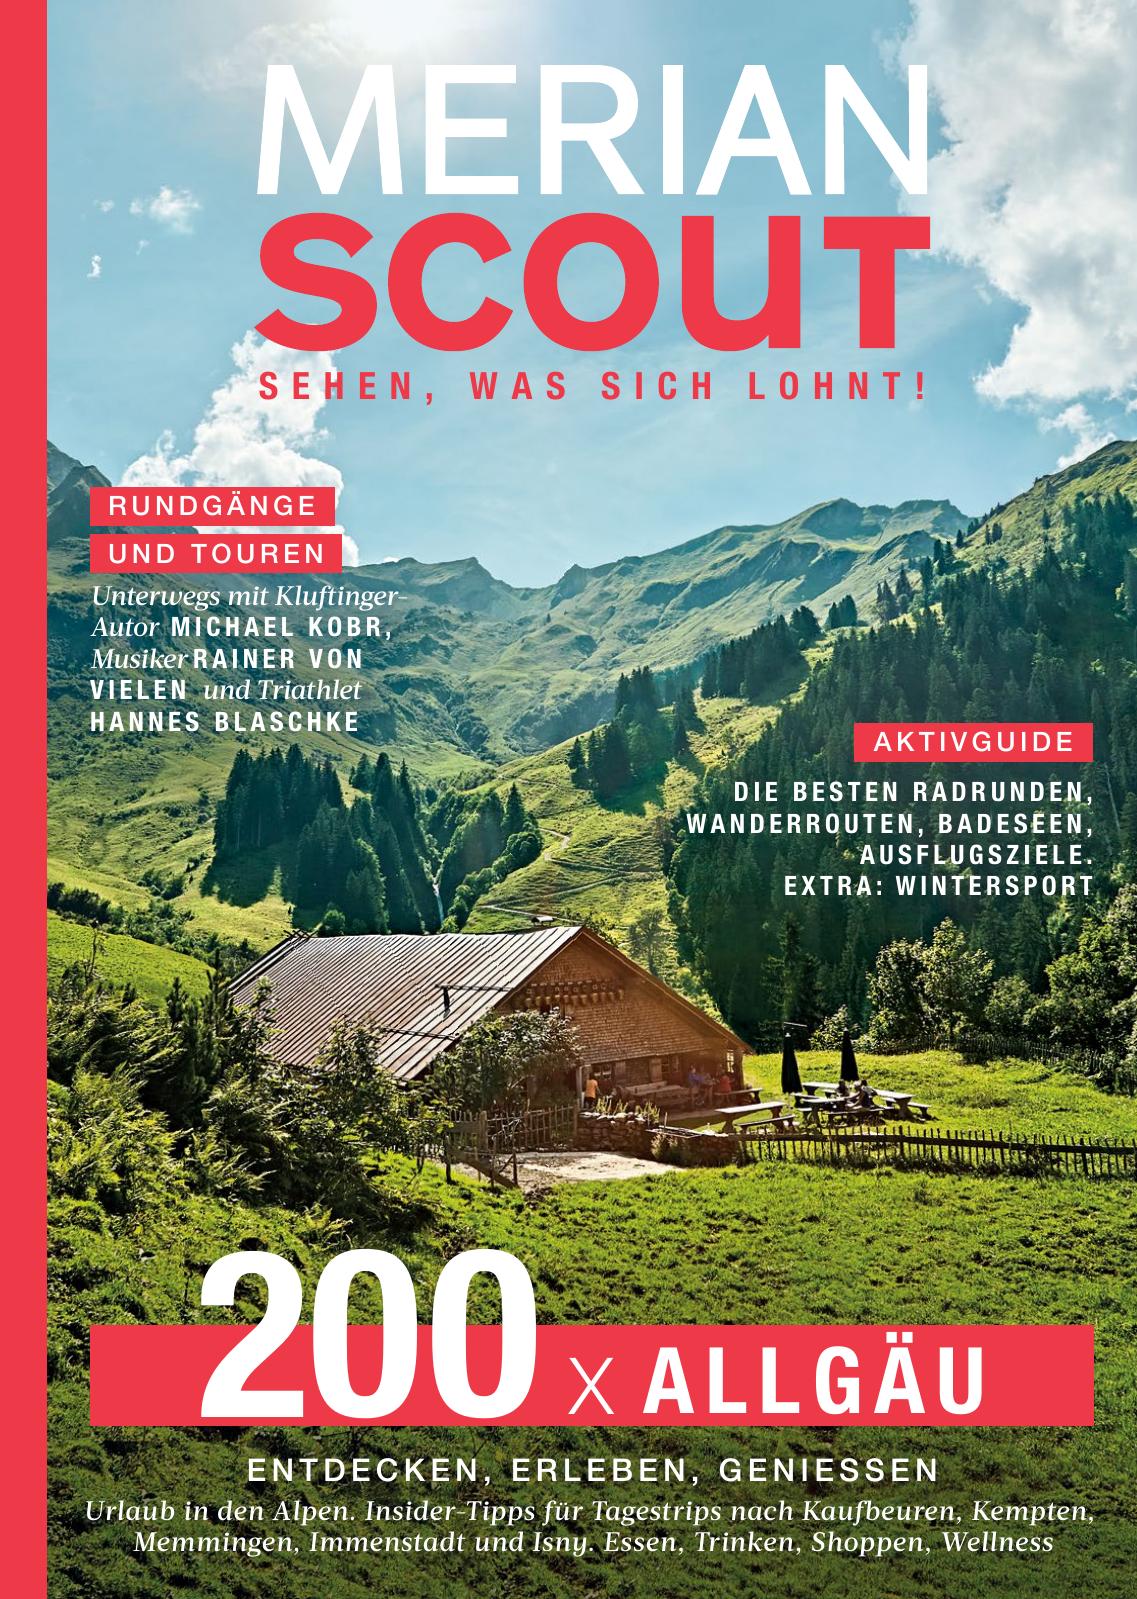 MERIAN Scout 20/2022 Allgäu